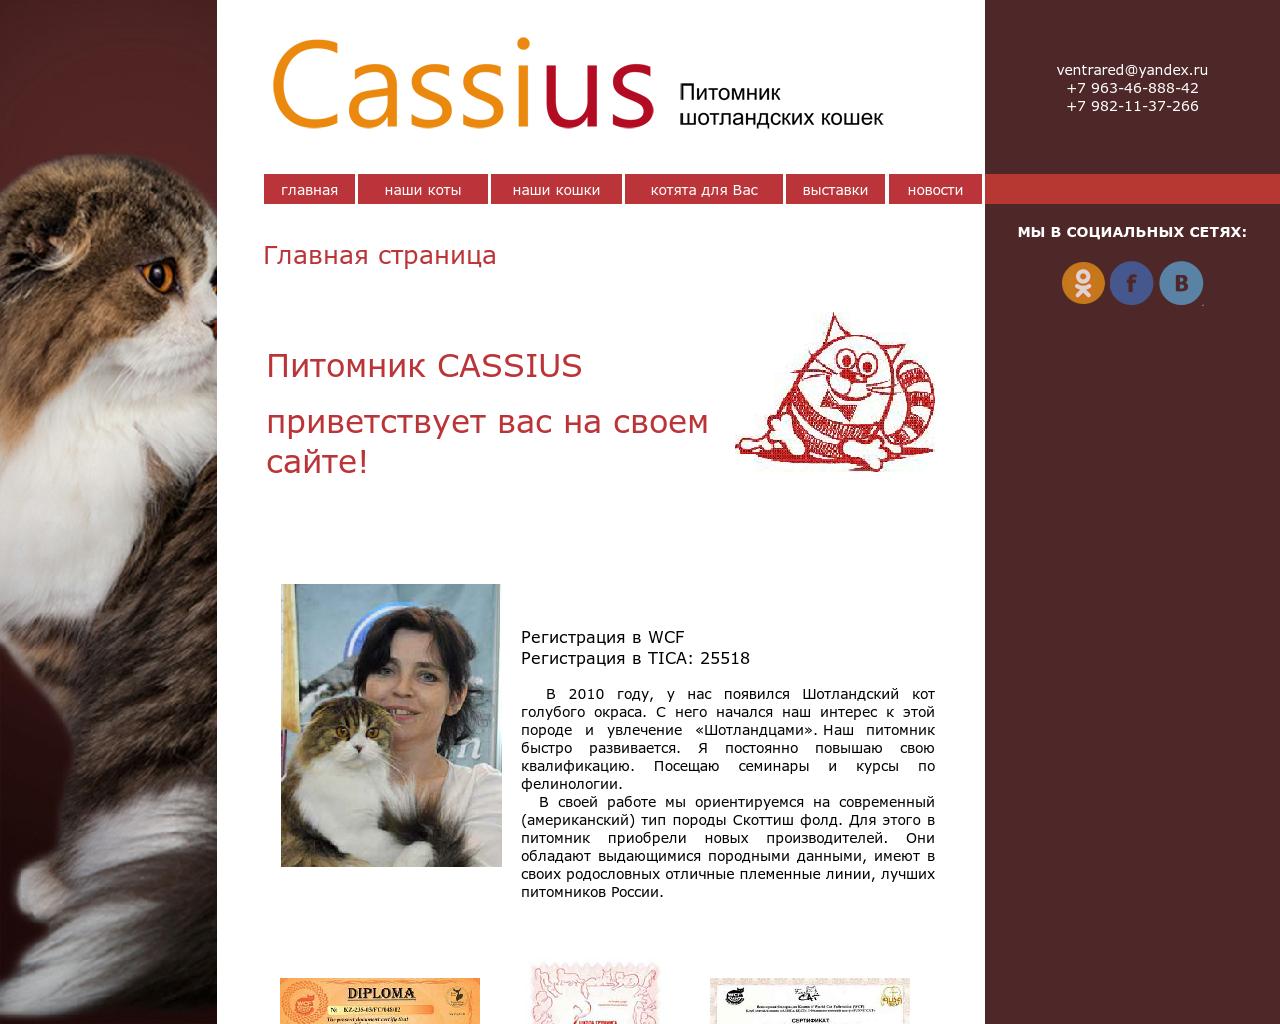 Изображение сайта cassius.ru в разрешении 1280x1024